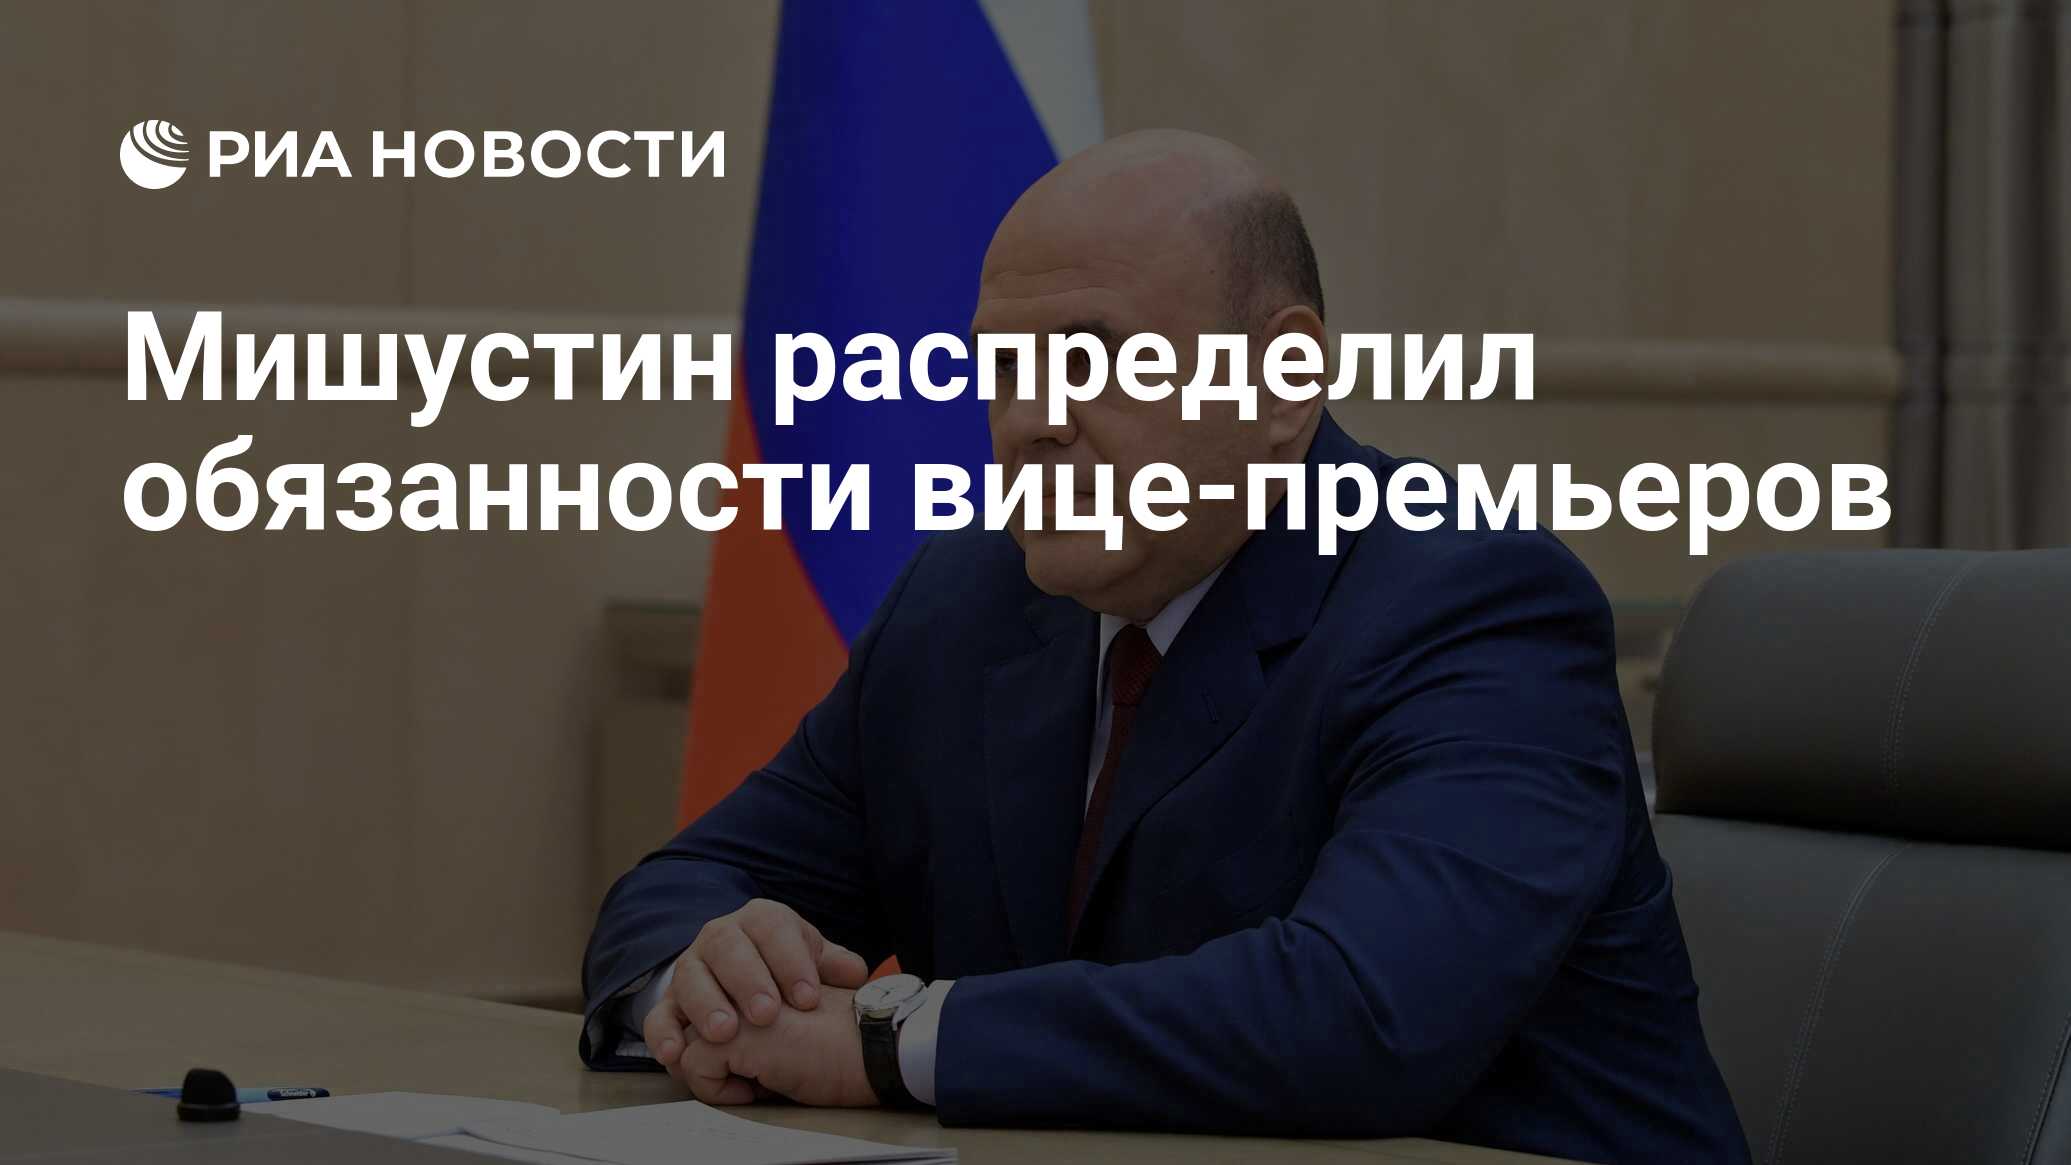 Мишустин распределяет обязанности вице-премьеров — Новости Russia Today